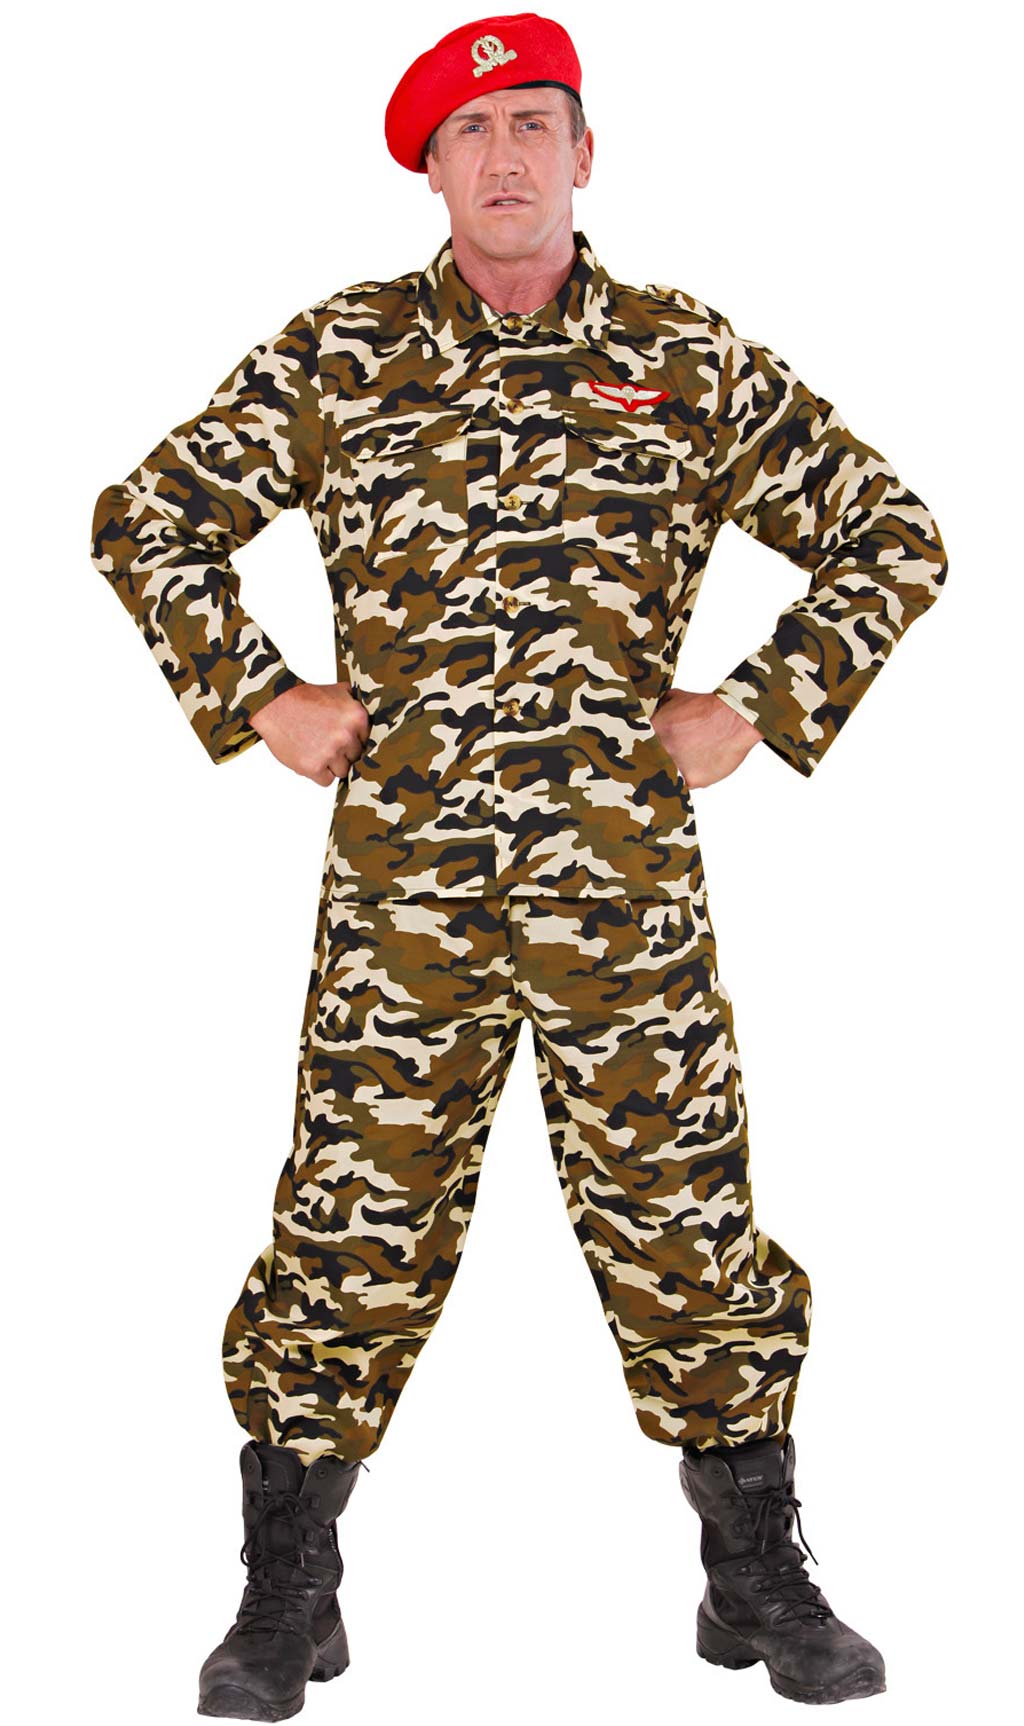 Déguisement - Costume militaire / soldat / costume camouflage pour homme -  Costumes de